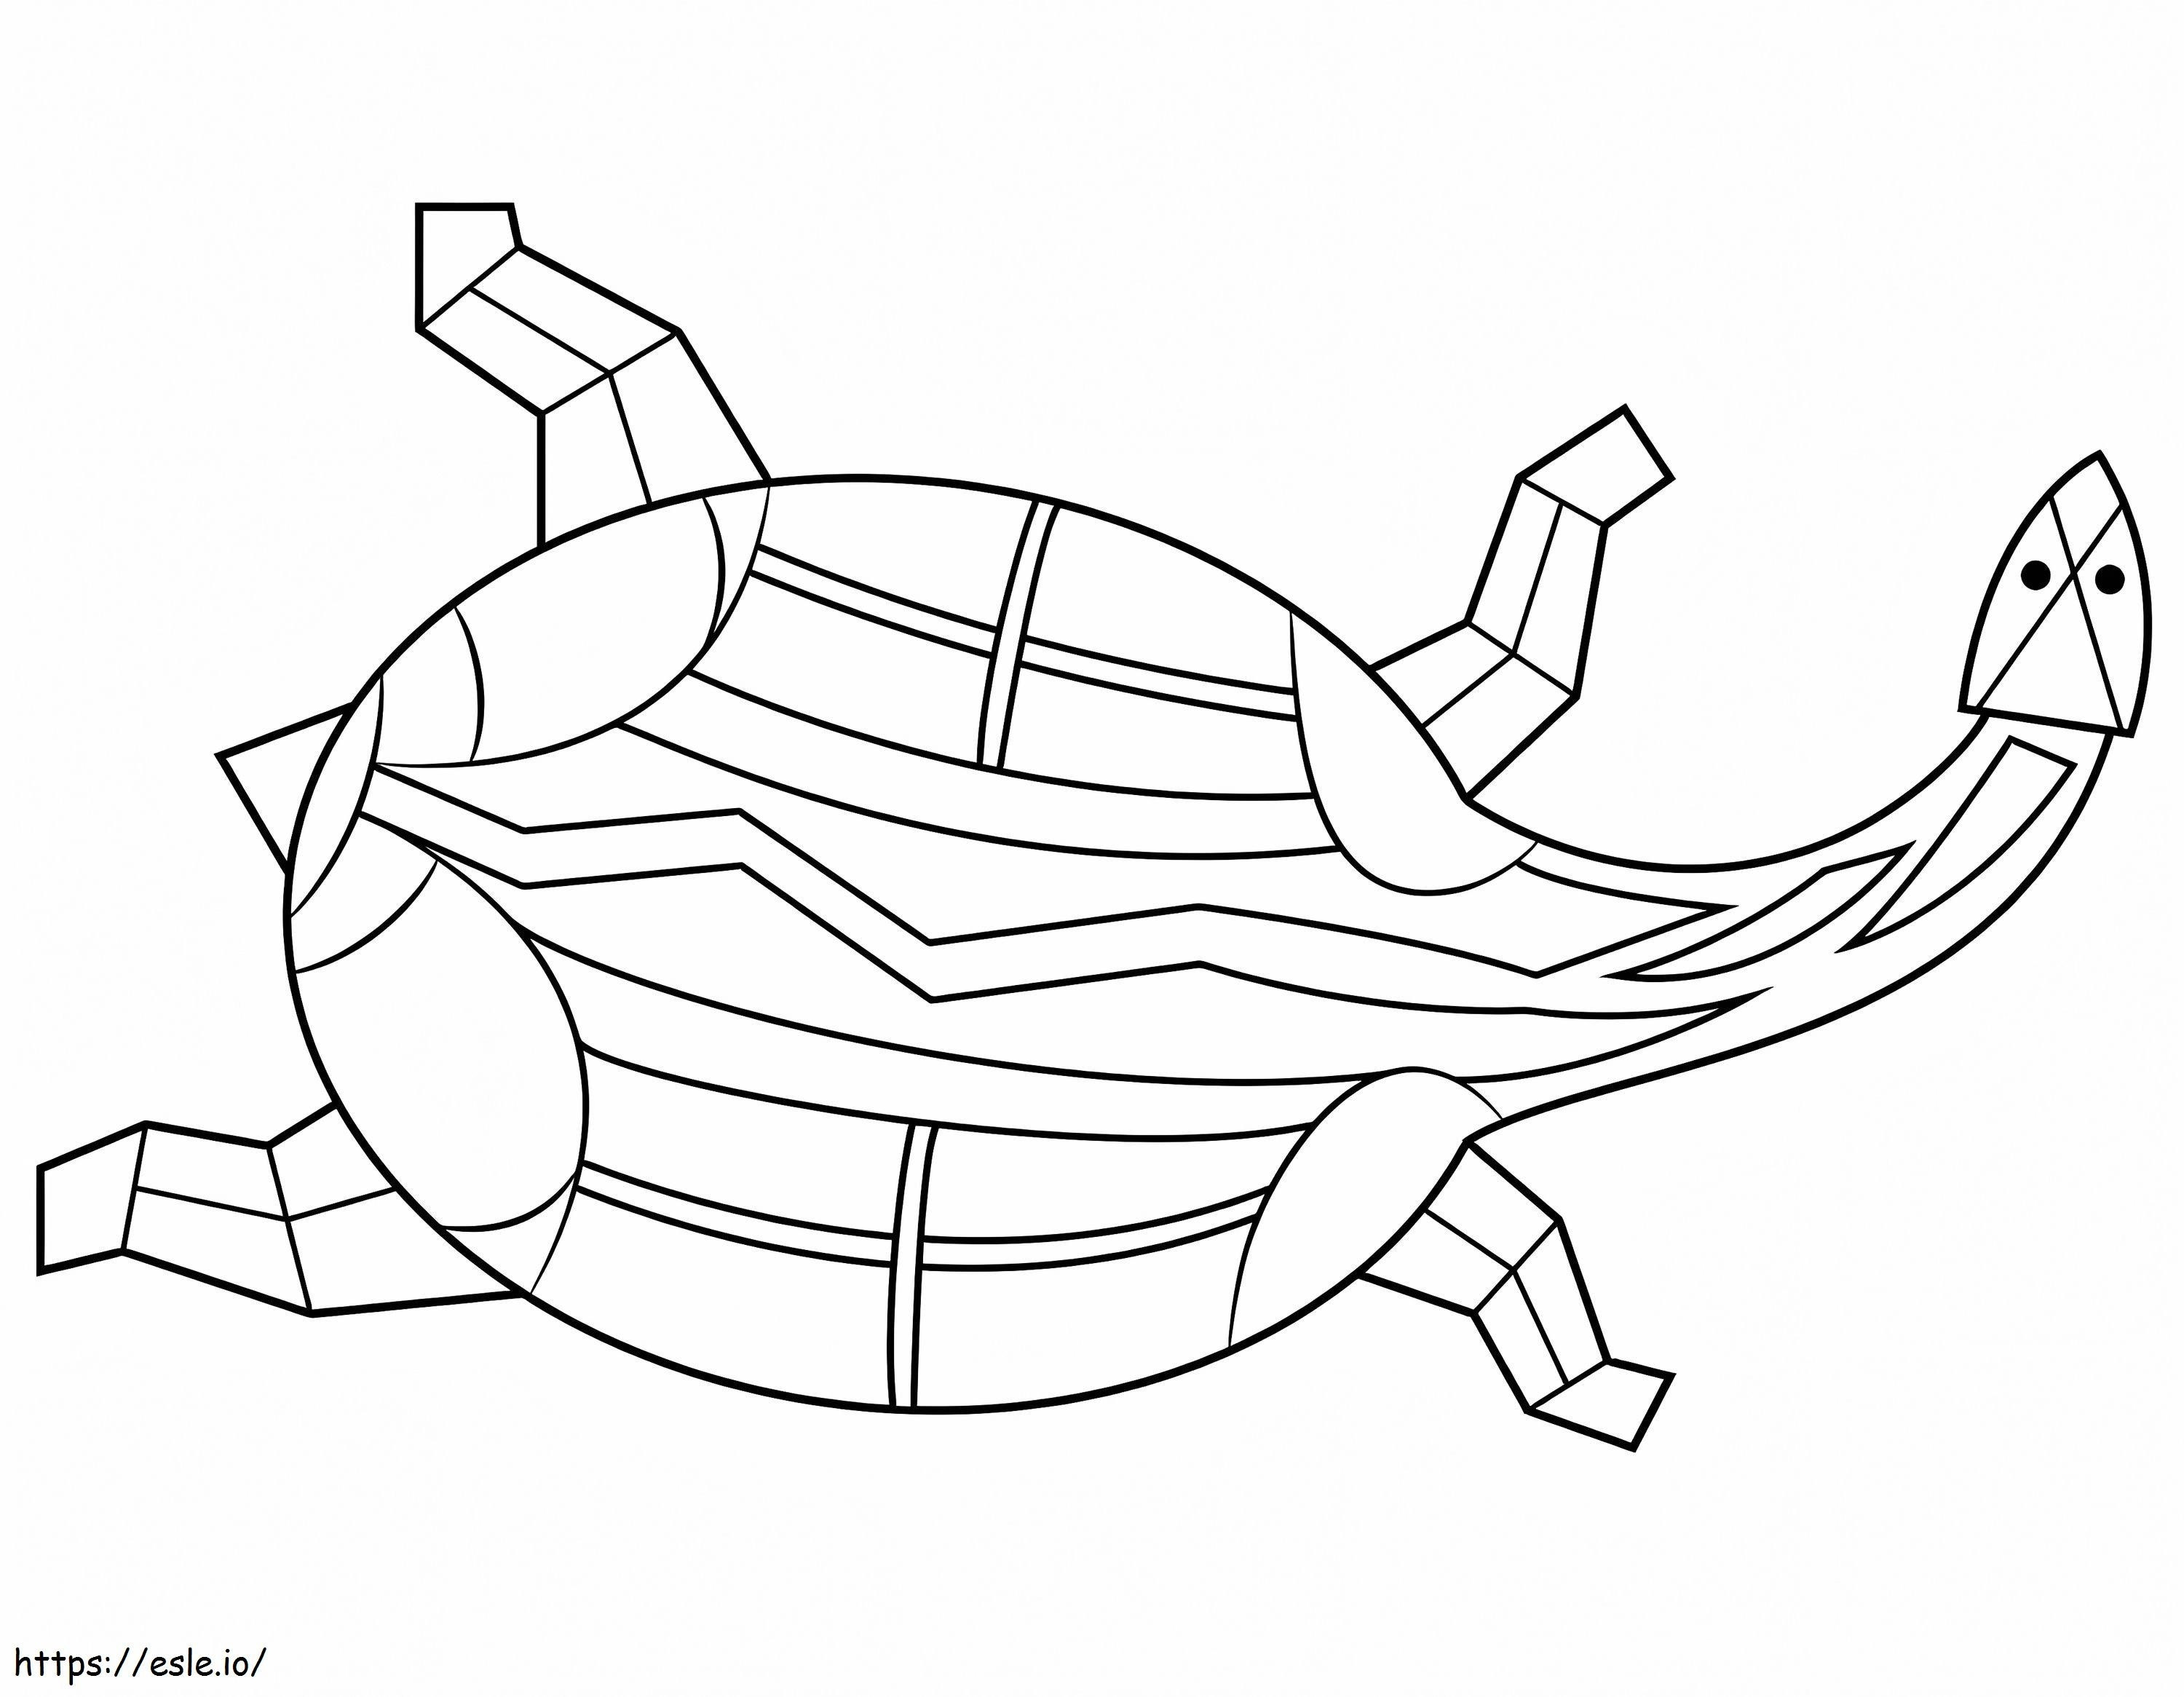 Aborygeńskie malowidło przedstawiające żółwia kolorowanka